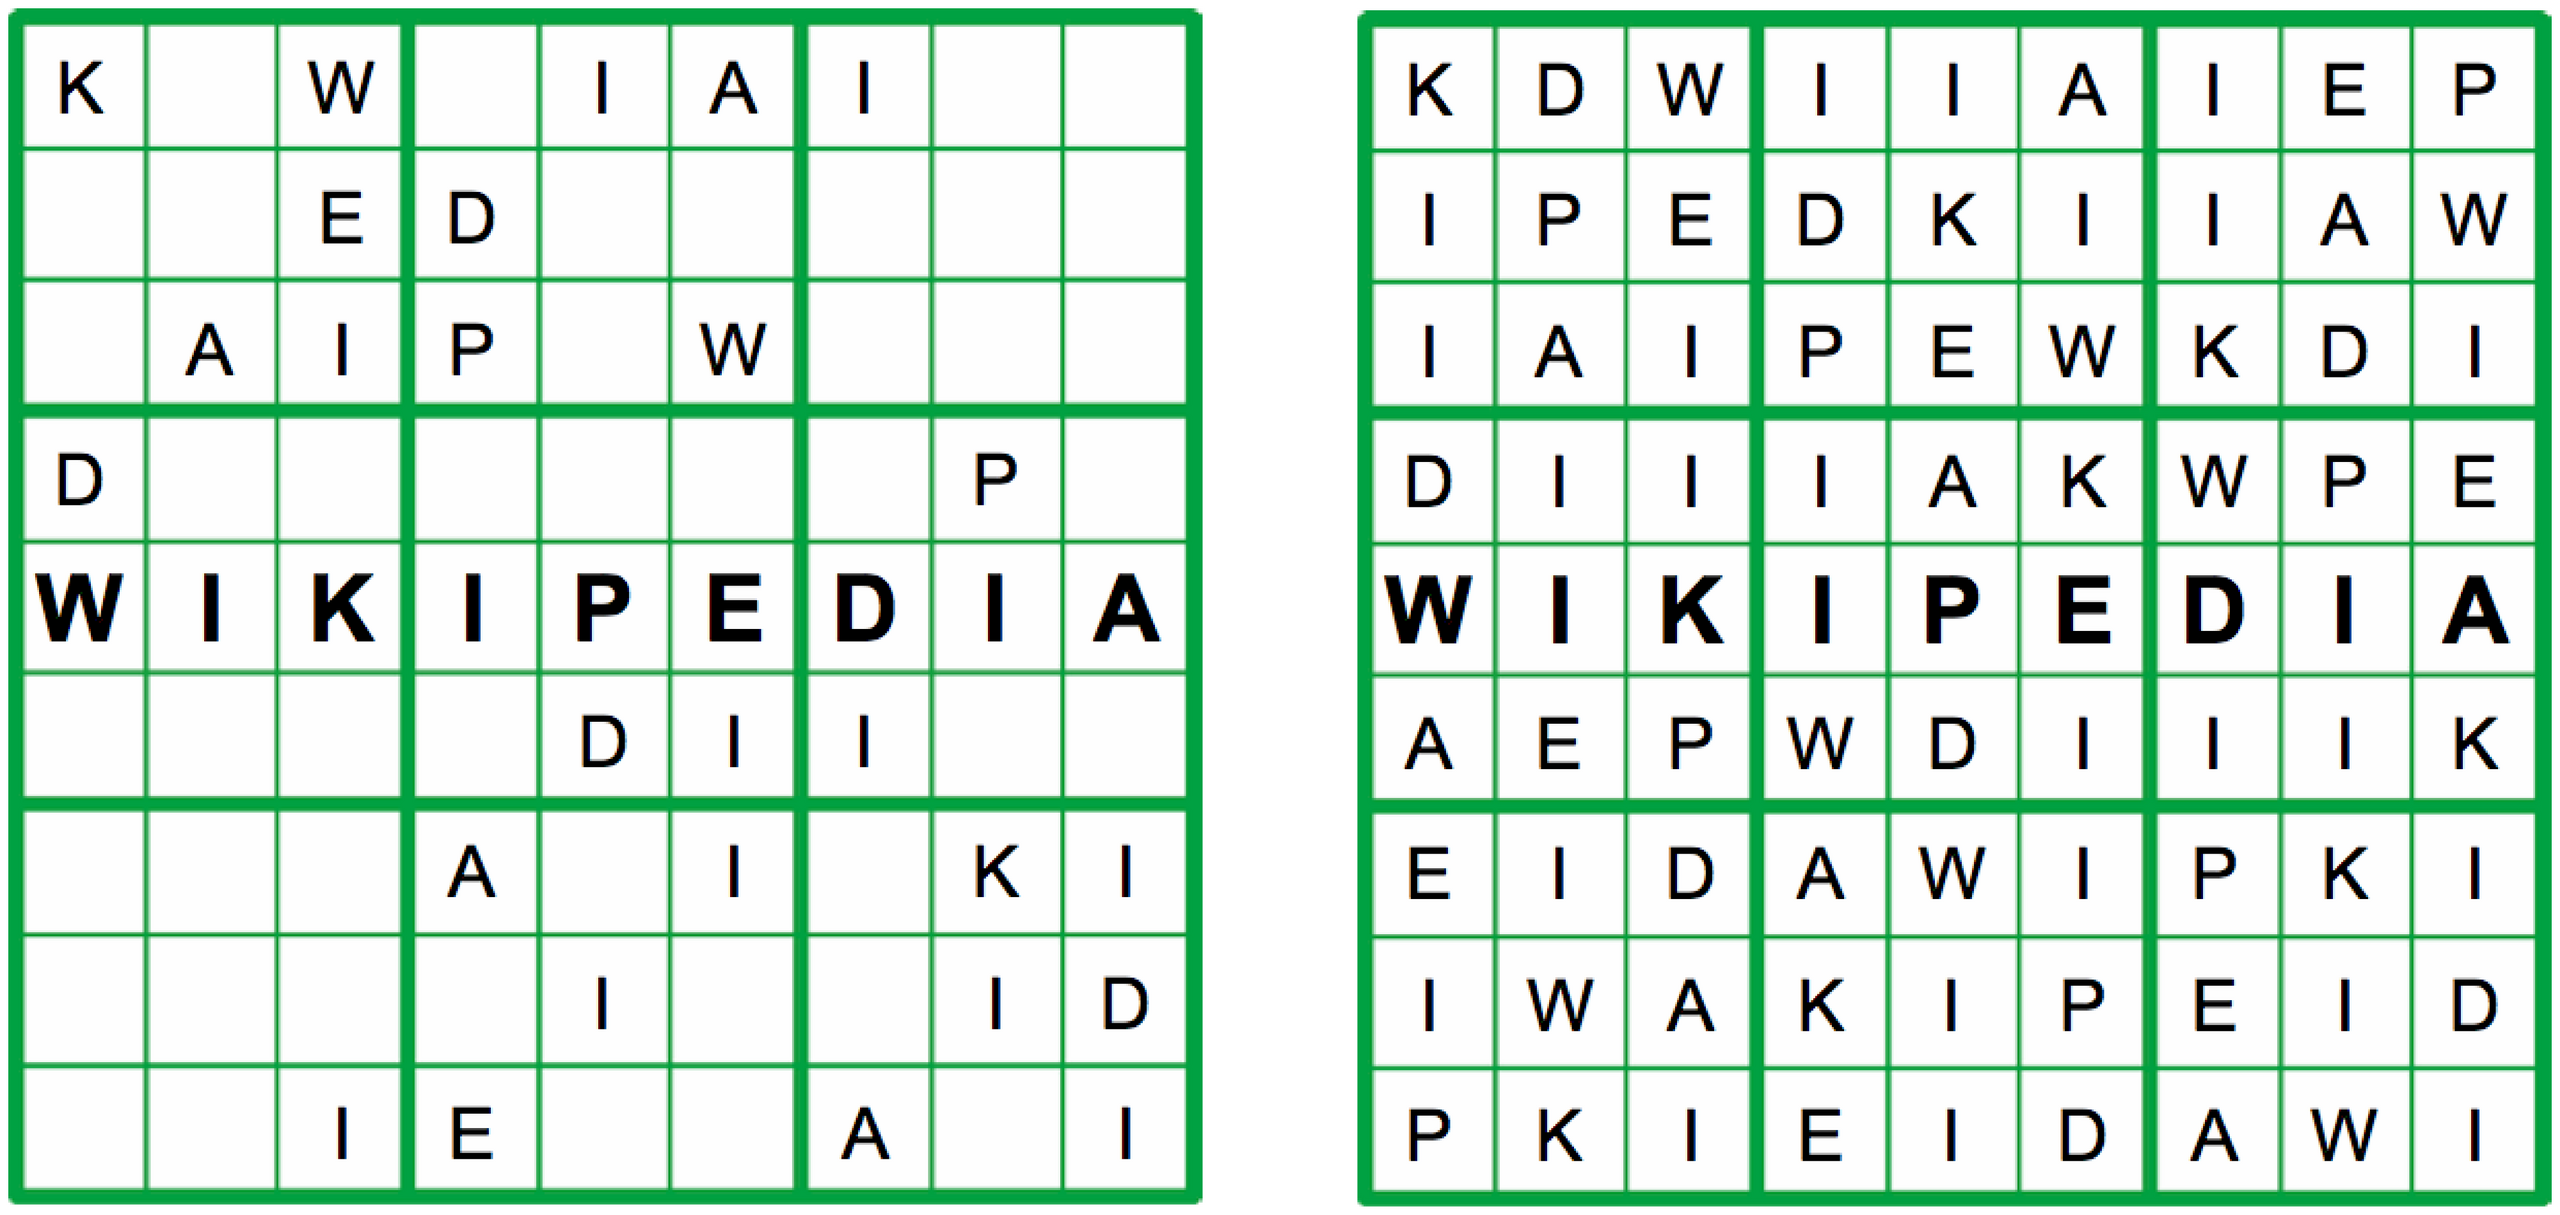 Sudoku - Wikipedia